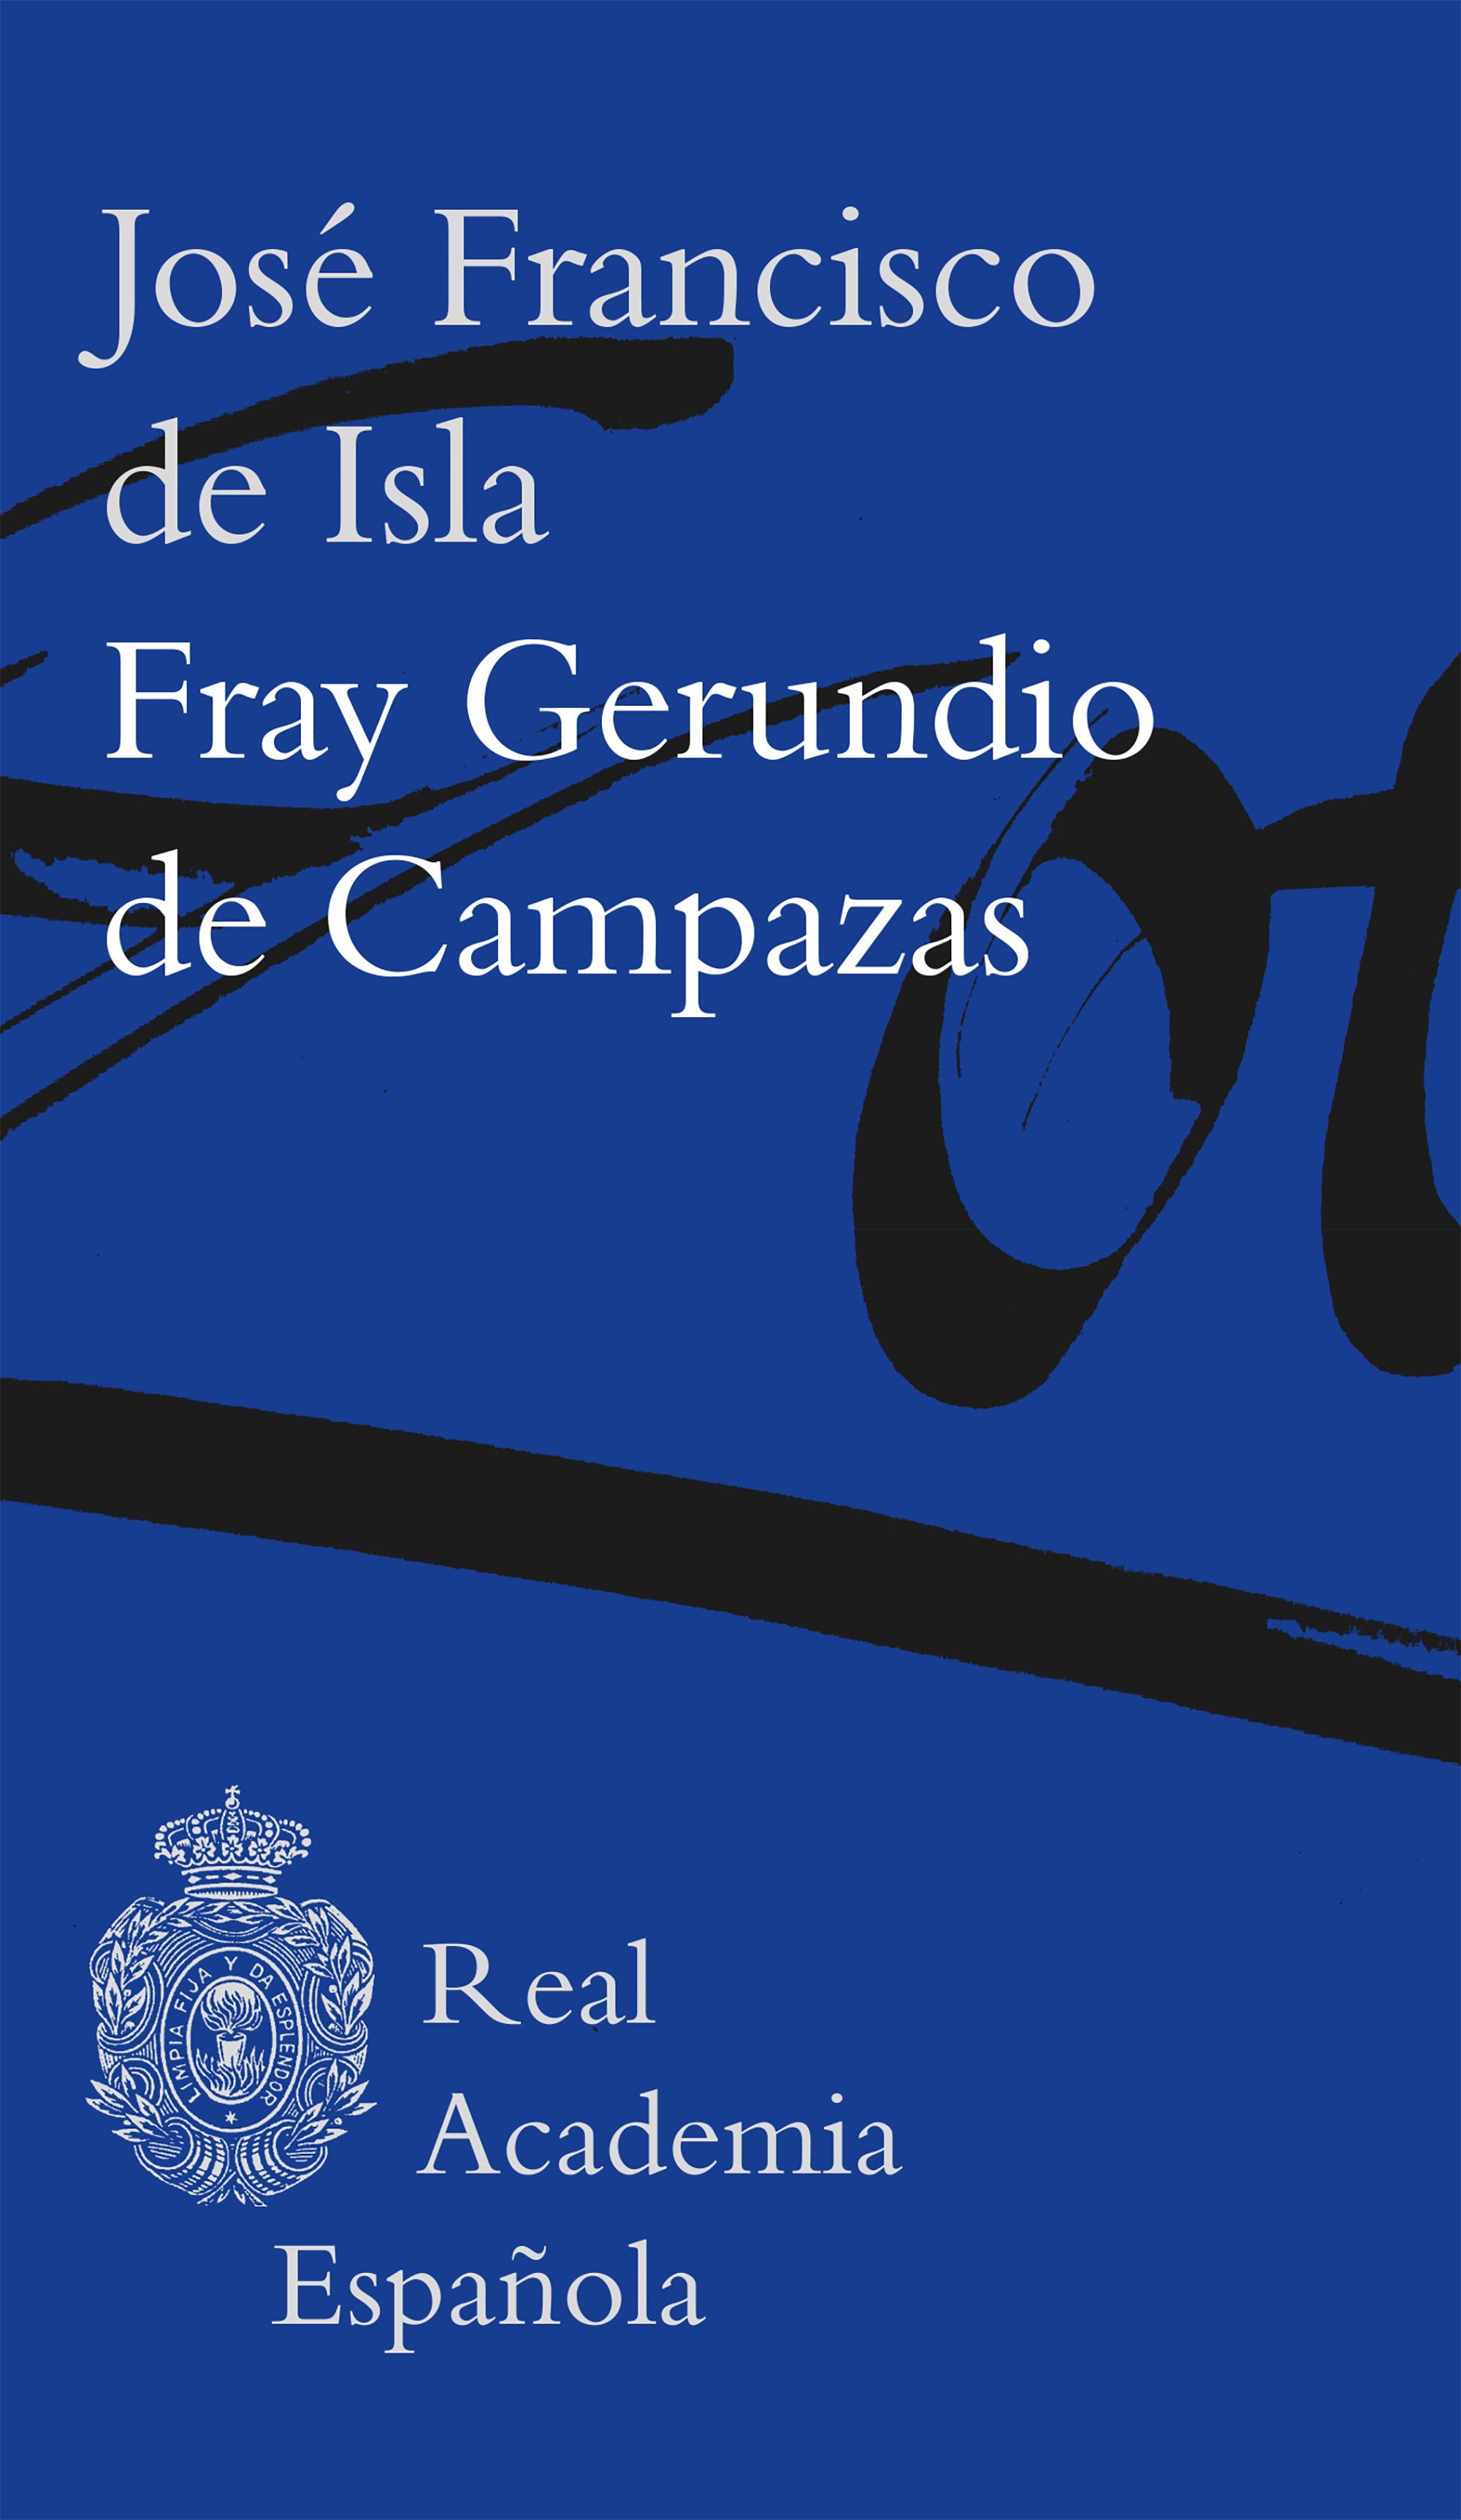 Imagen de portada del libro Fray gerundio de Campazas